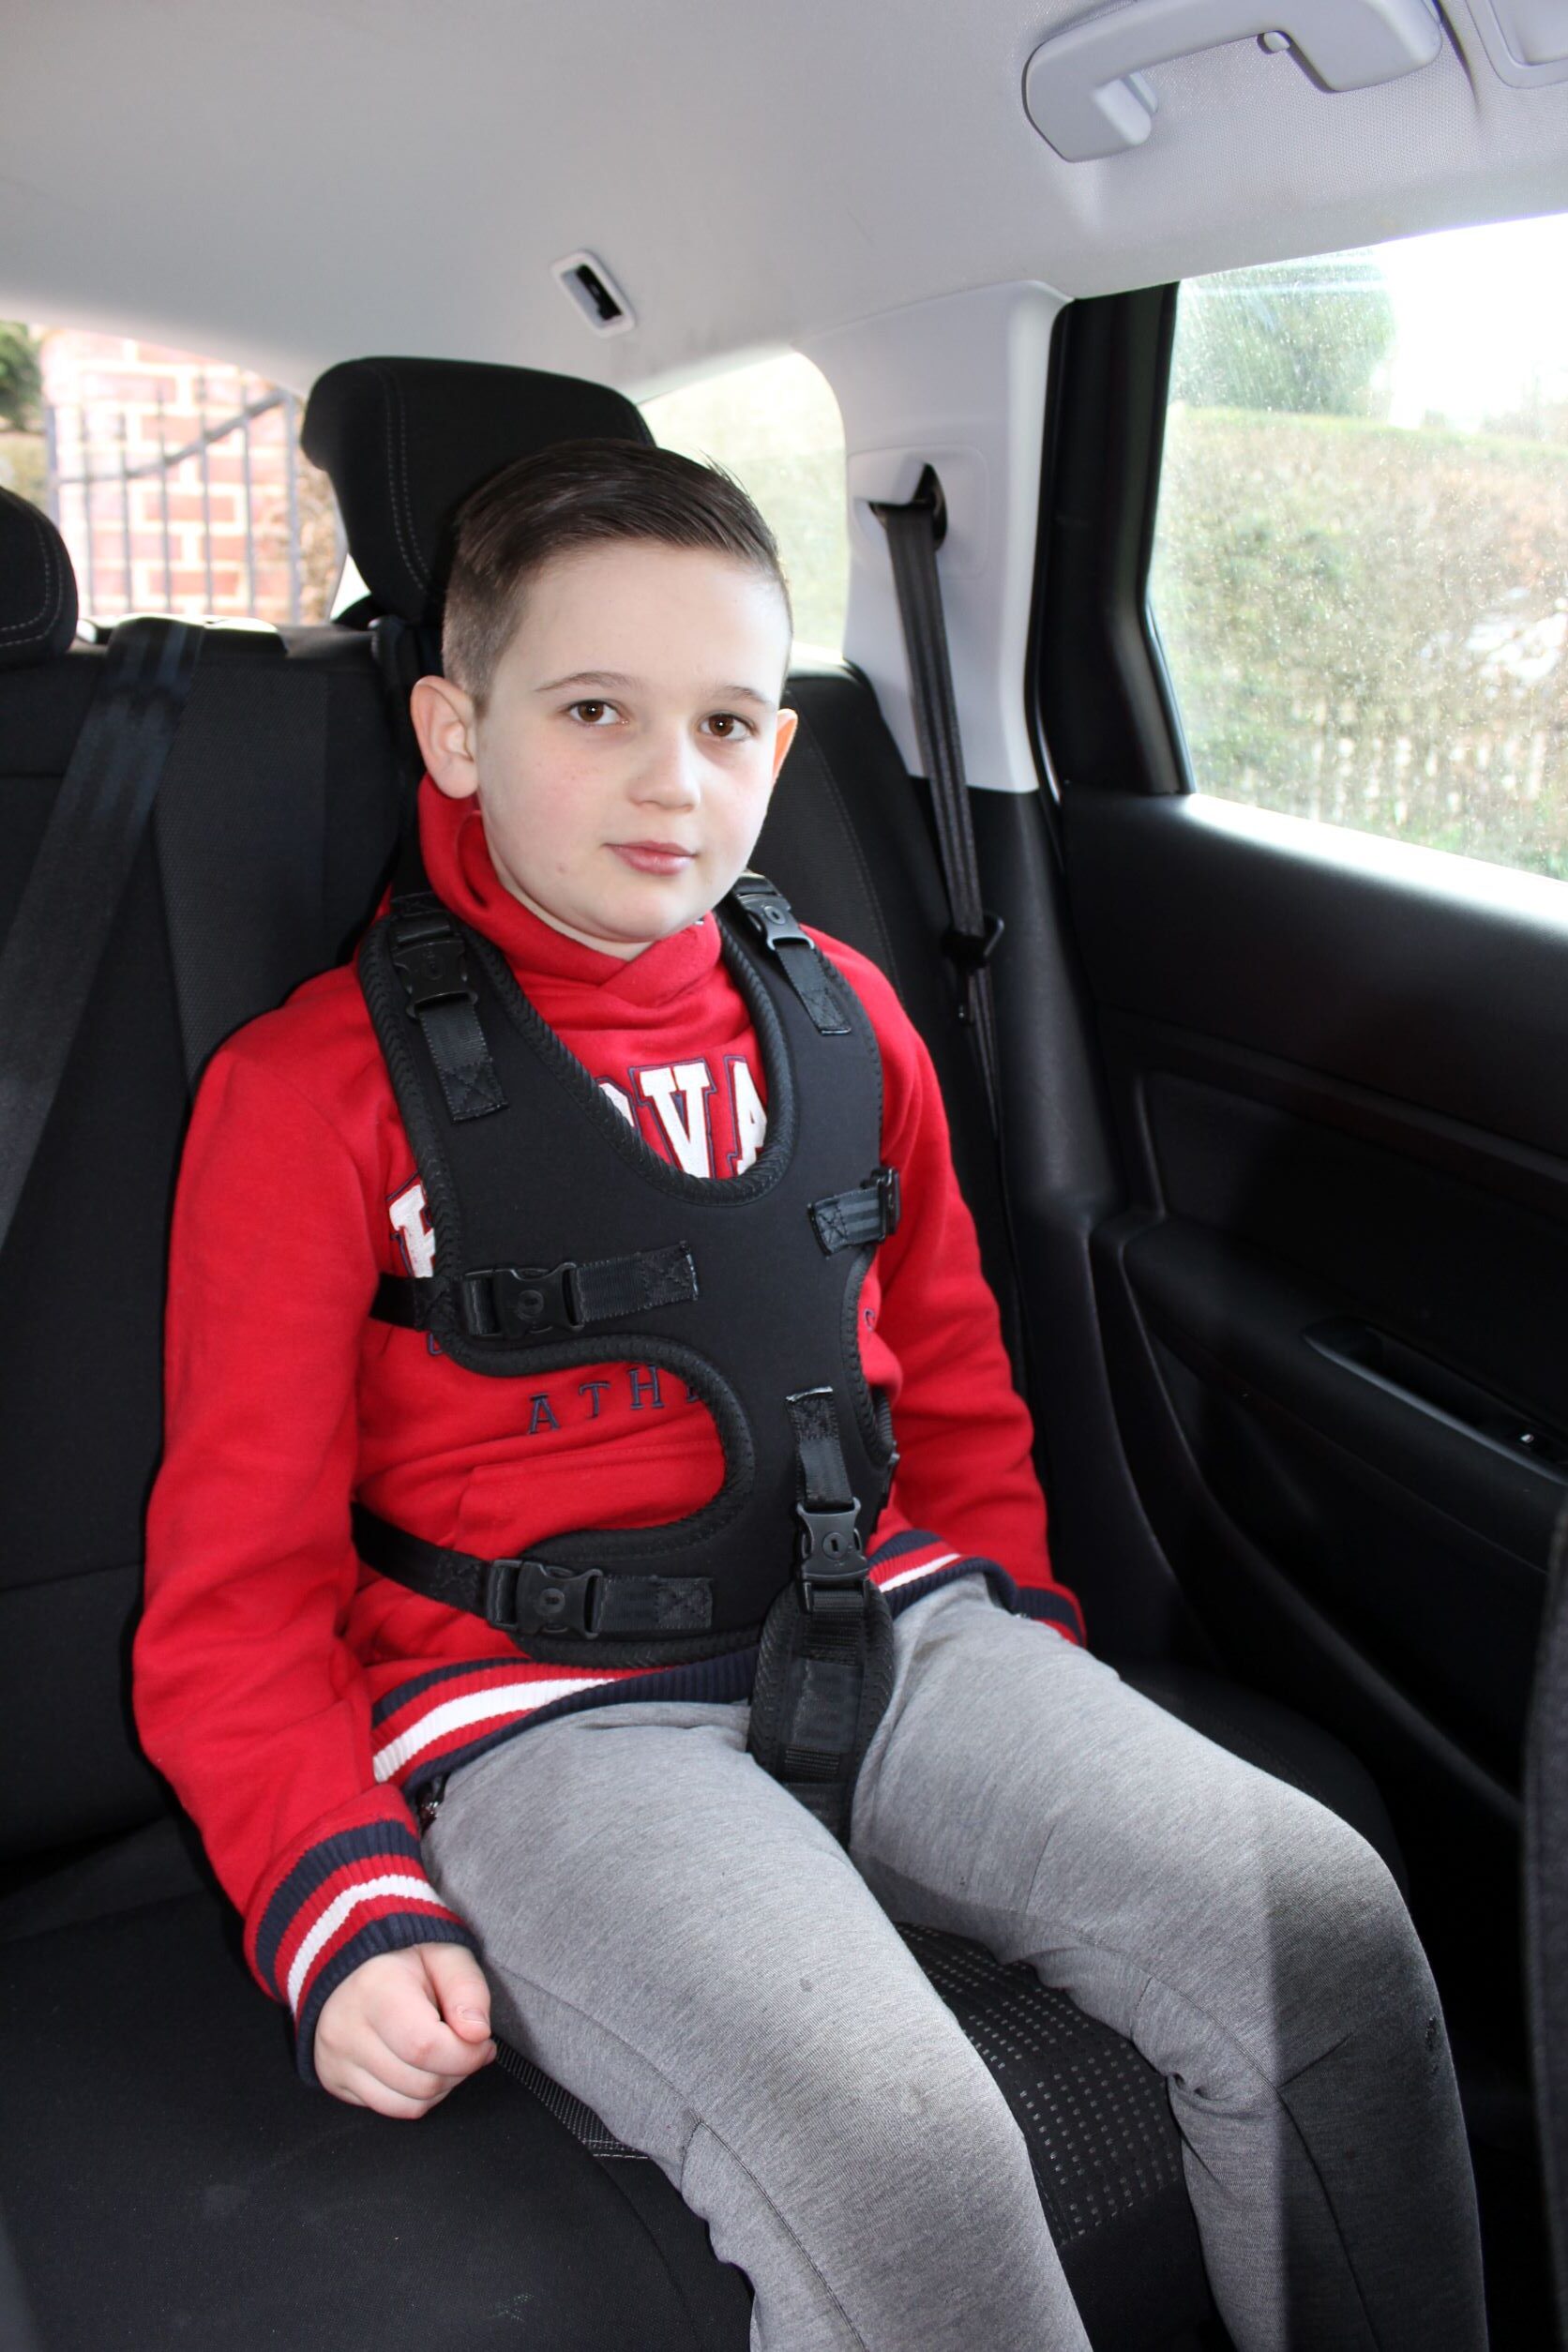 Protection siège voiture pour siège auto bébé - Voiture sécurité